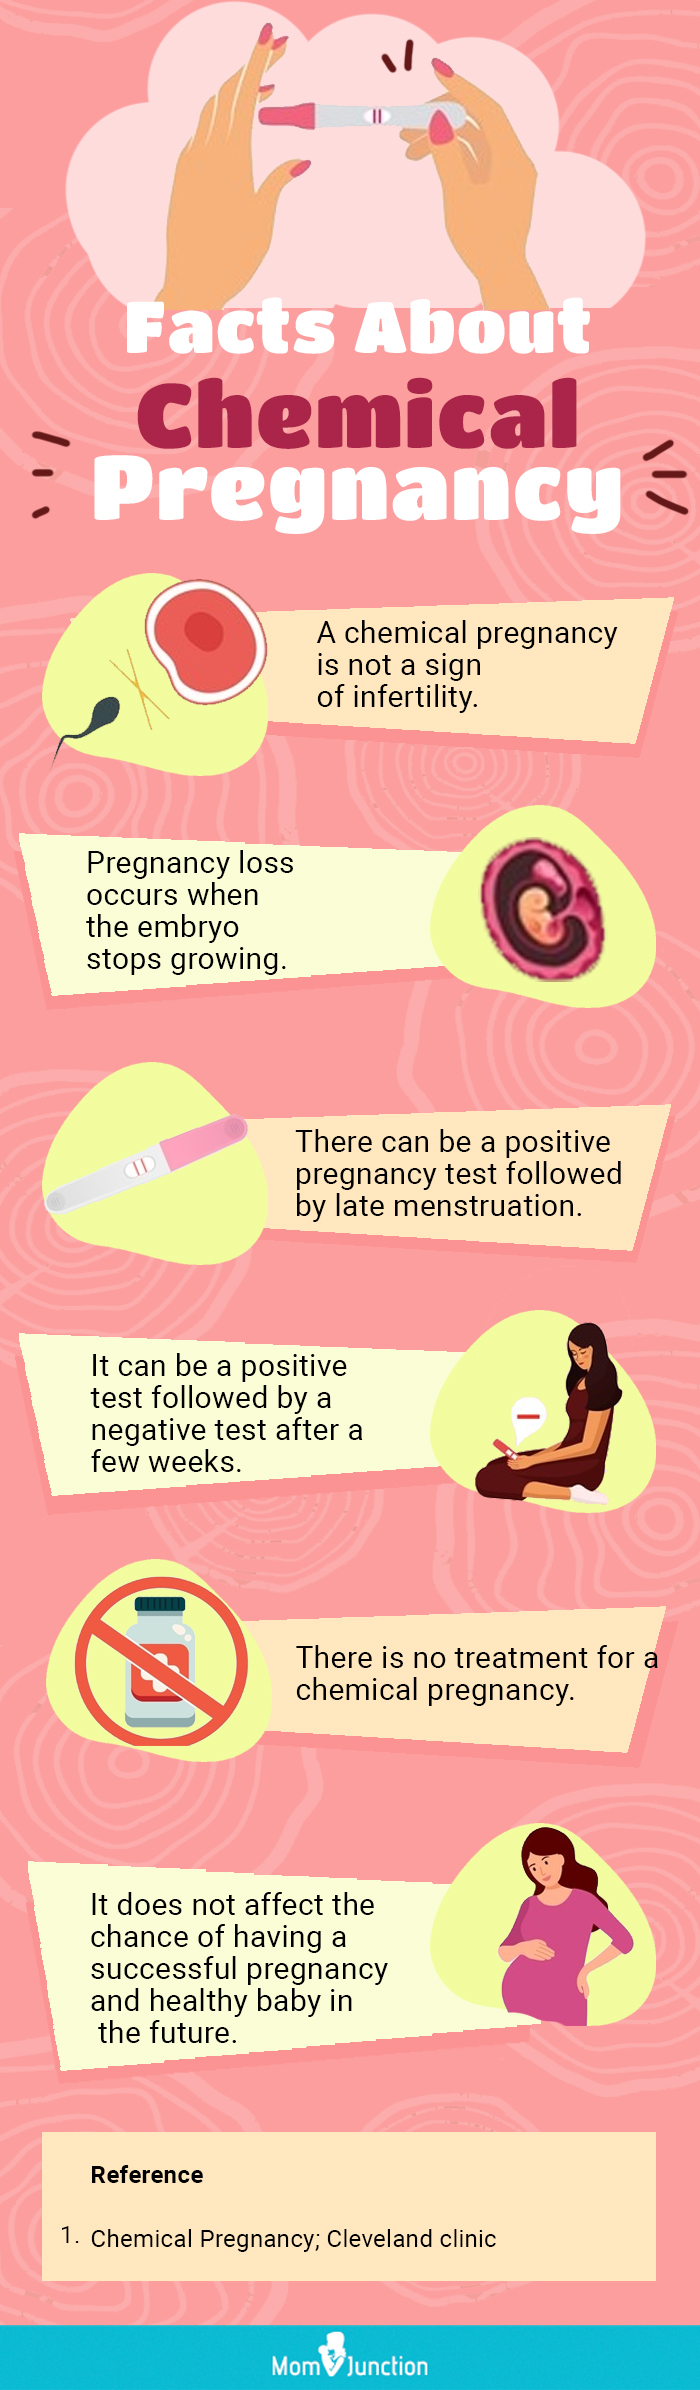 关于化学妊娠的事实(信息图)